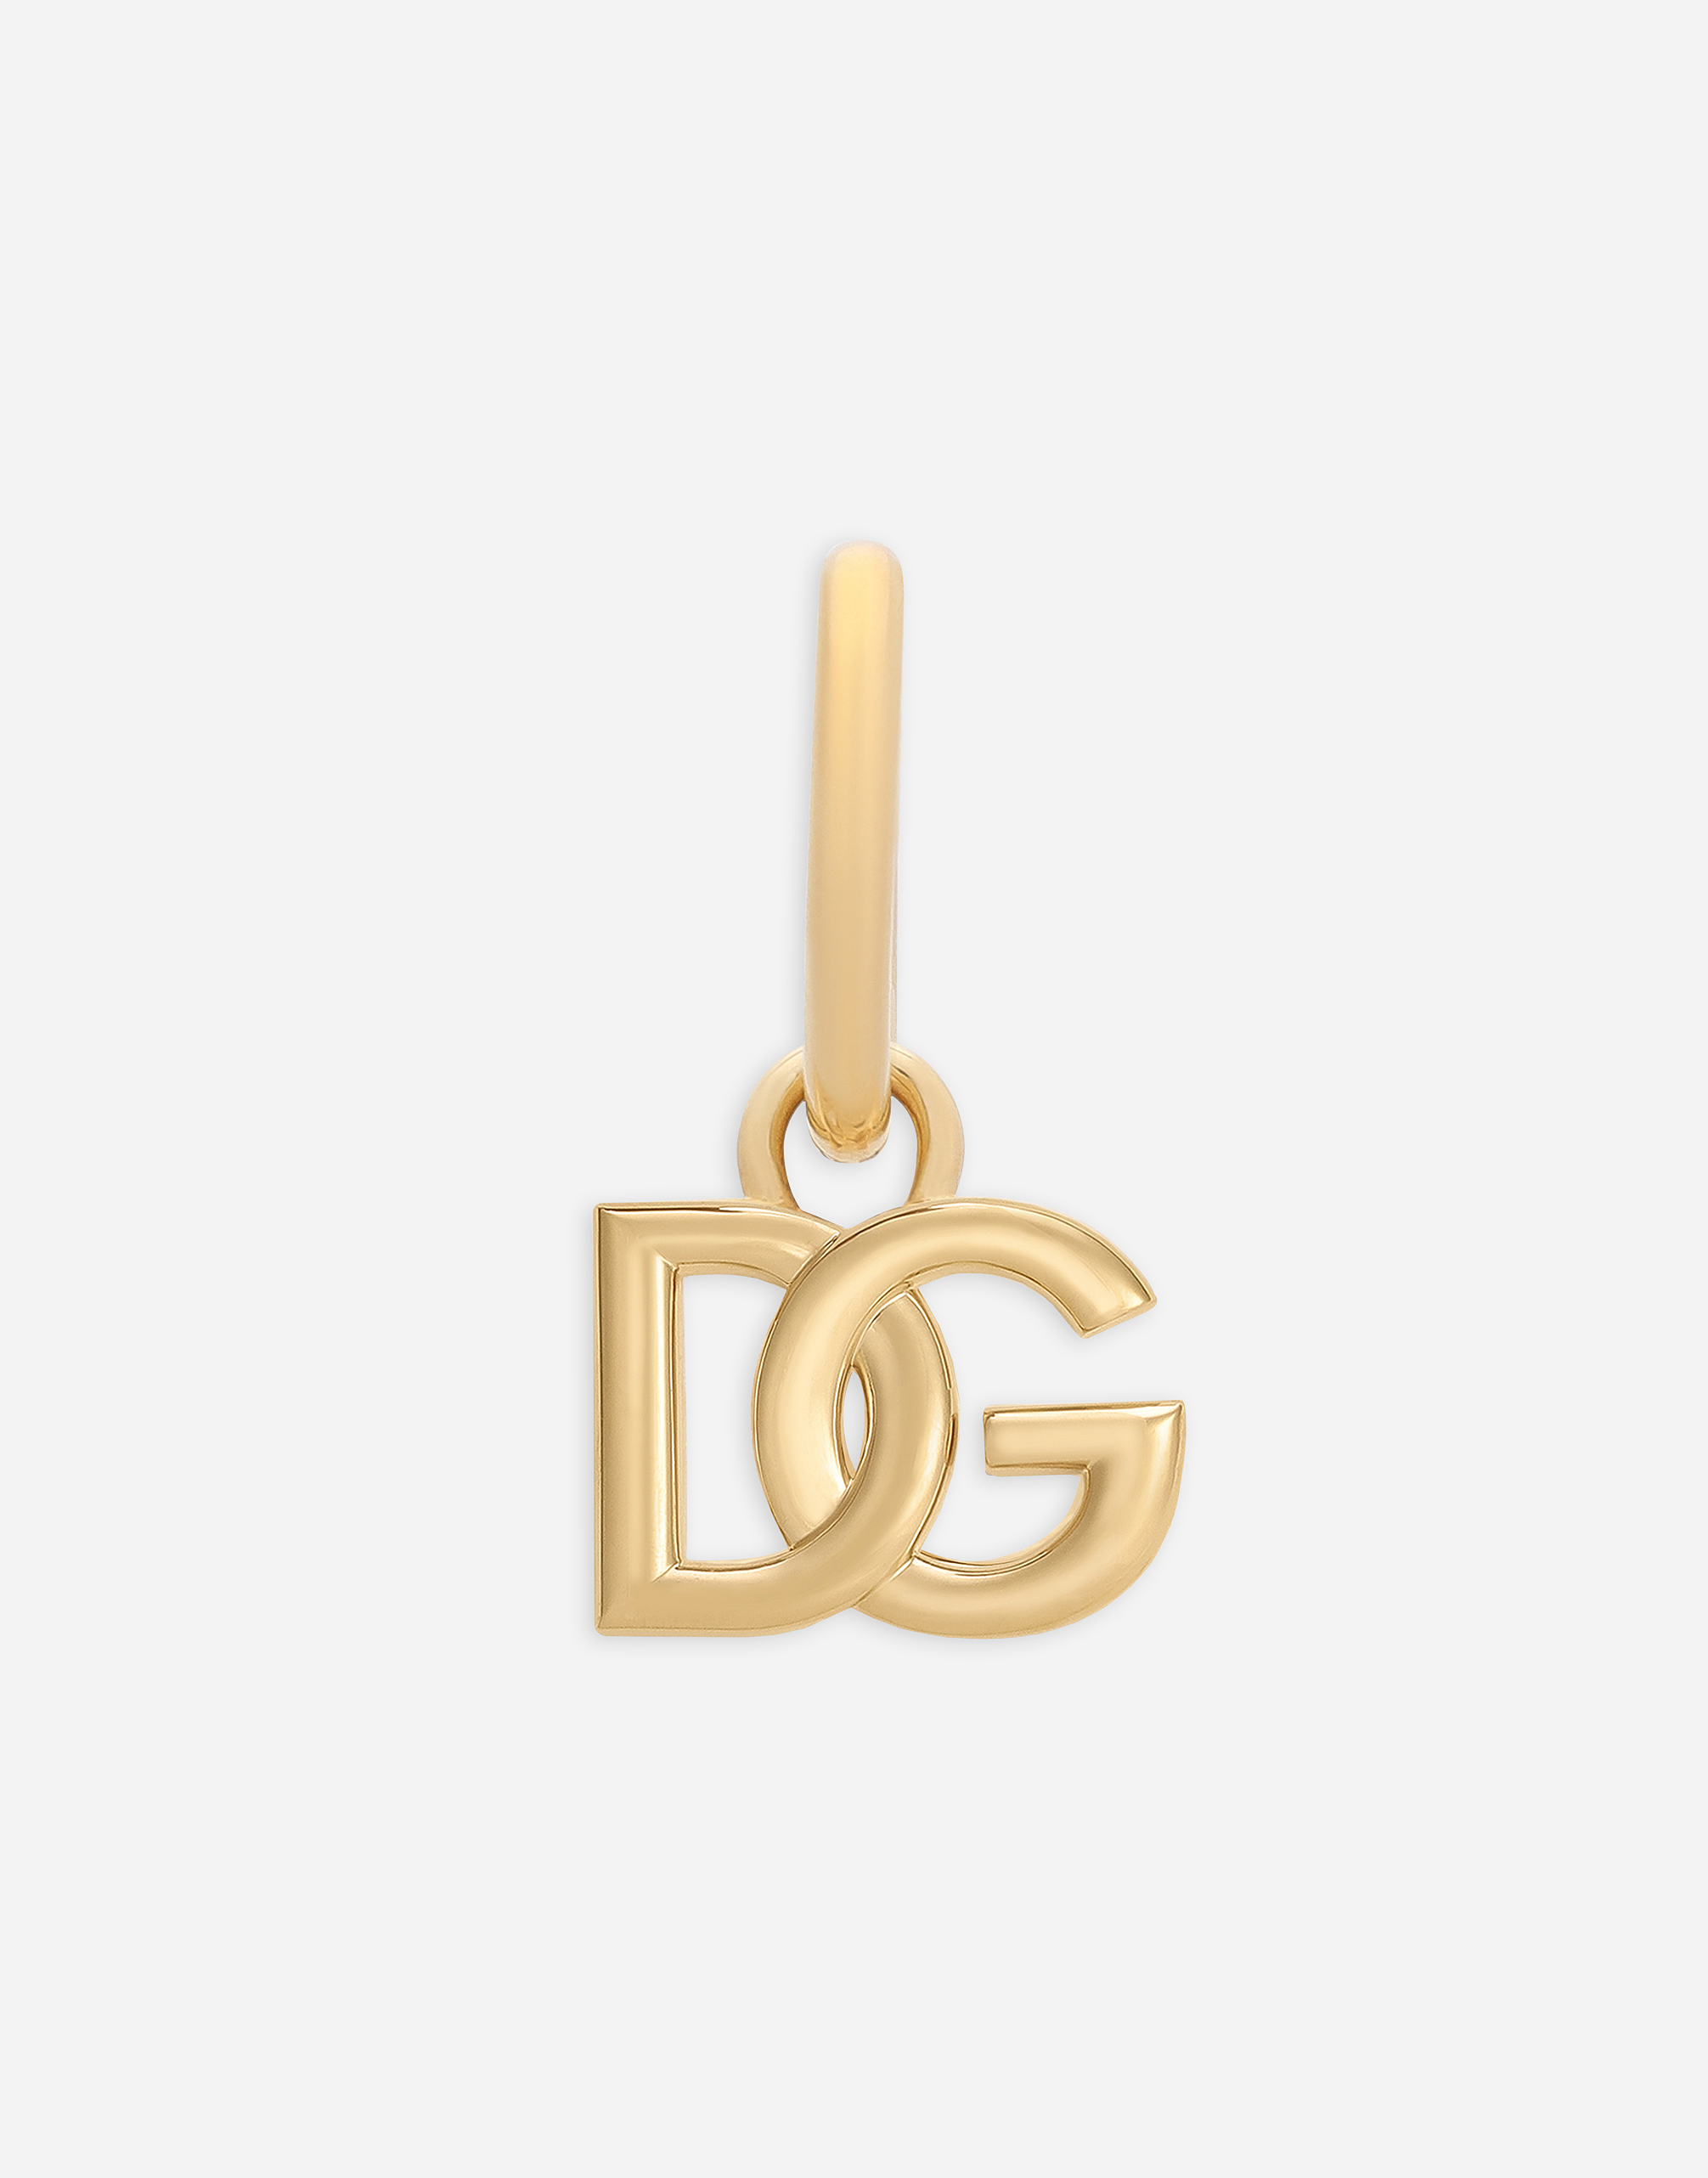 Single DG logo earring in Gold